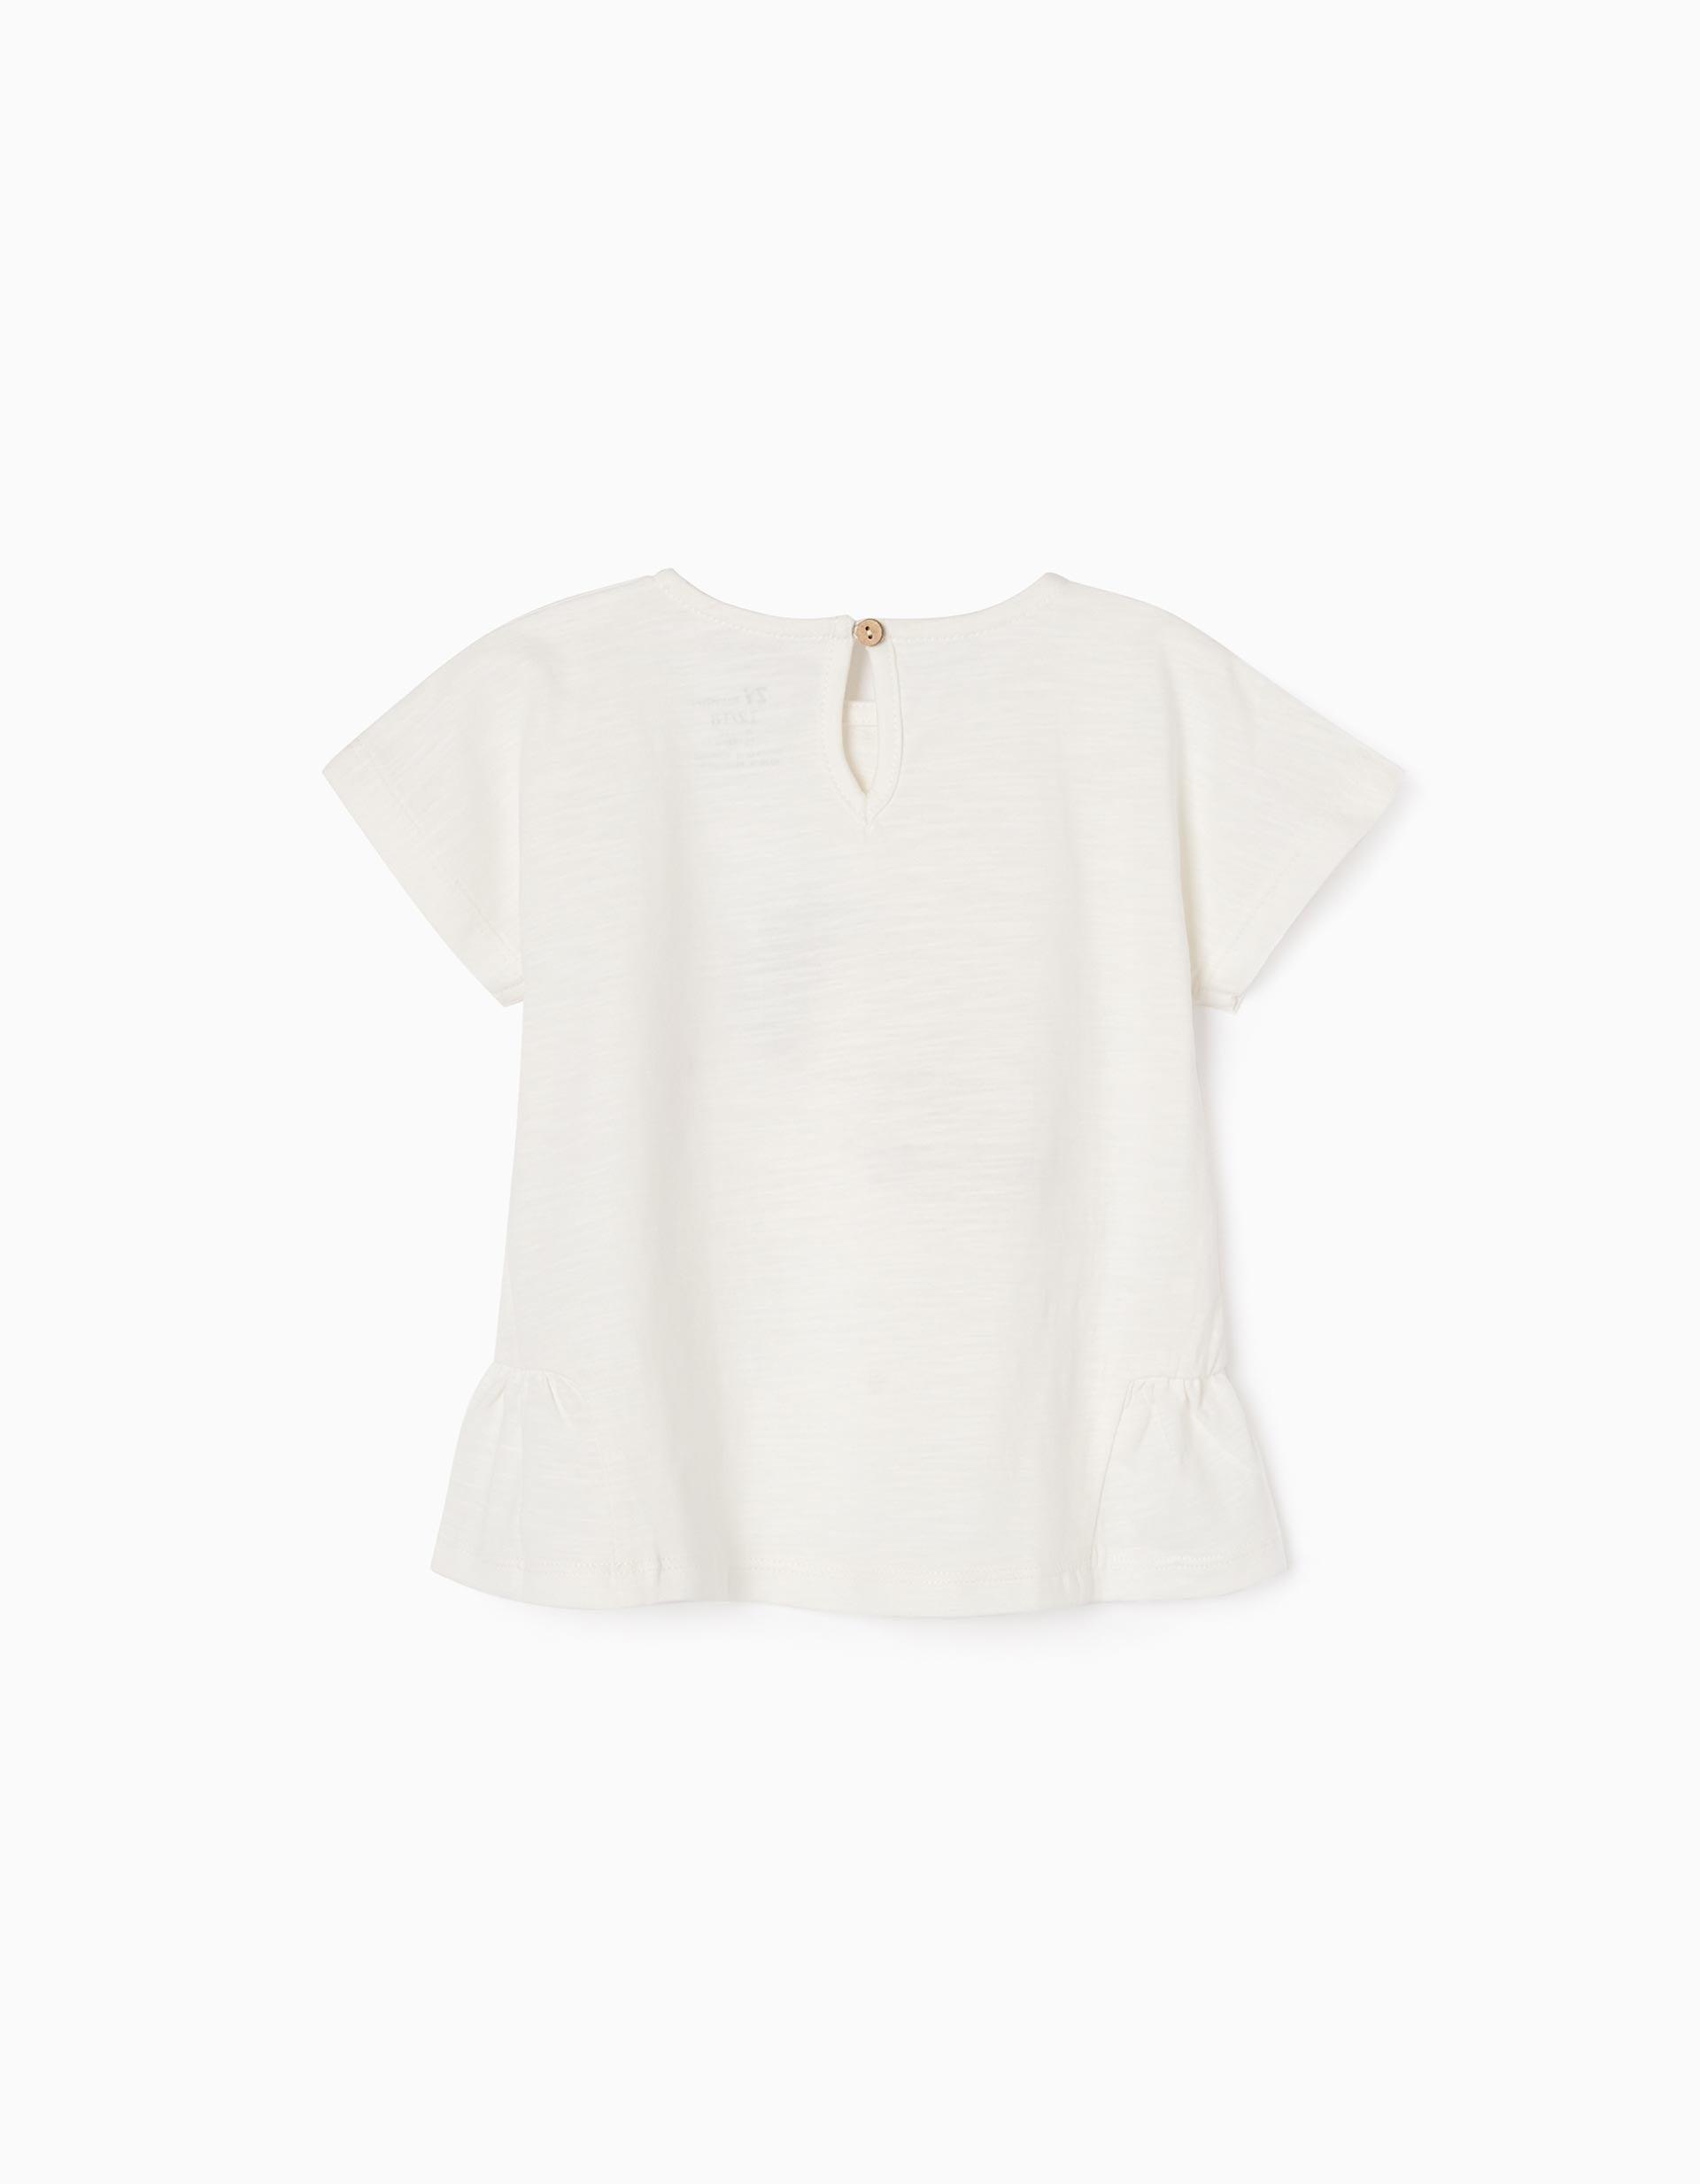 Zippy - White Ruffled Sleeve T-Shirt, Baby Girls